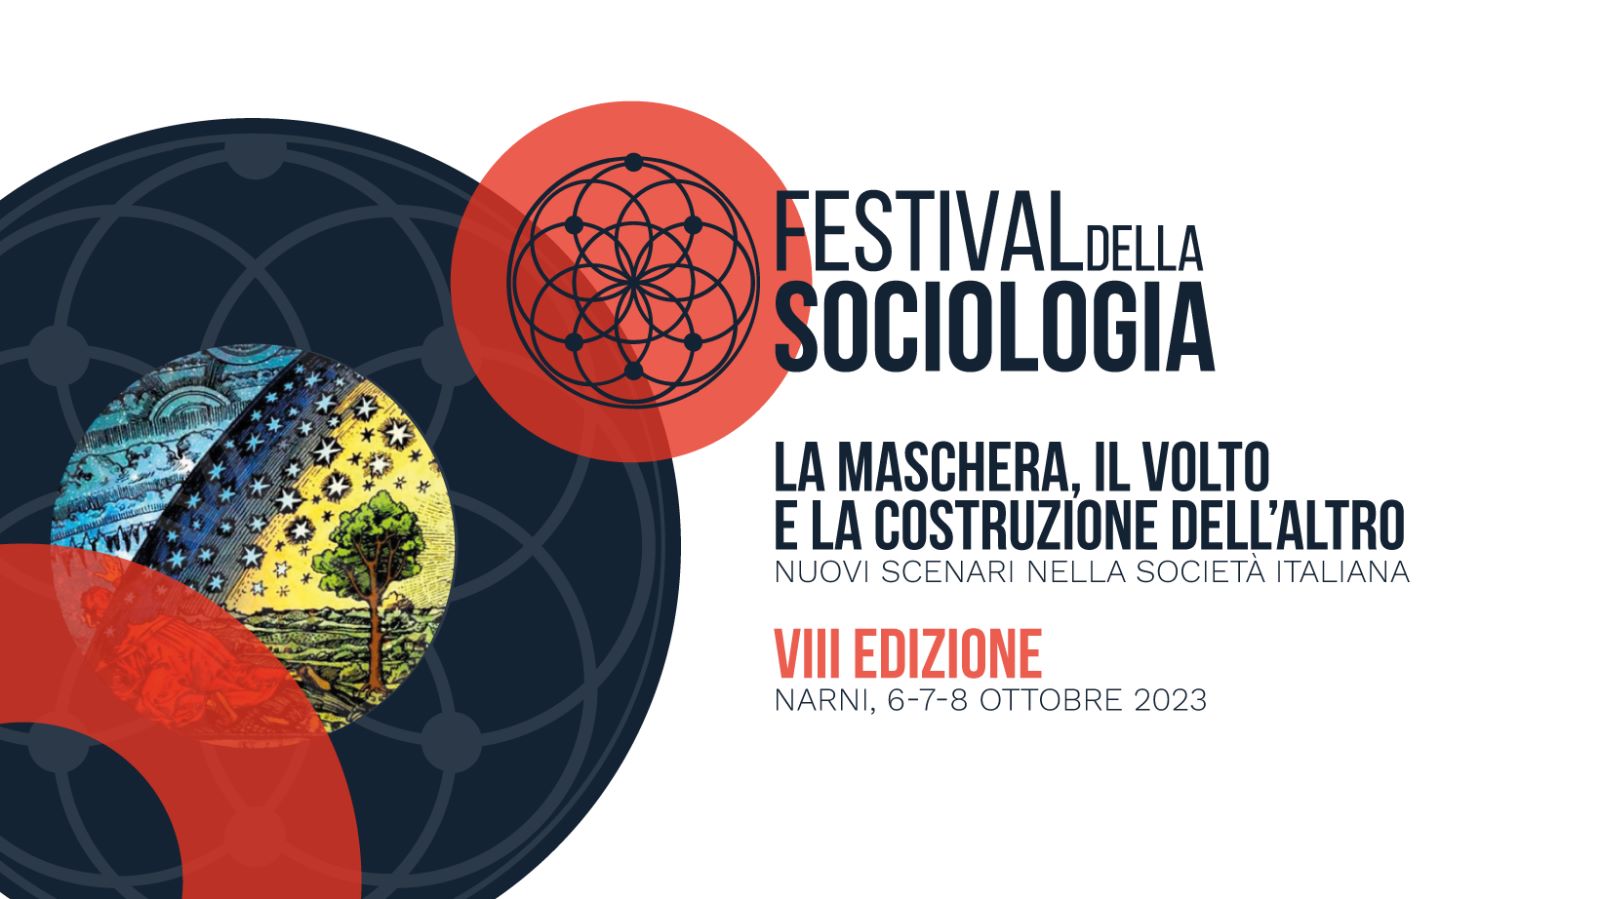 Festival della sociologia 2023